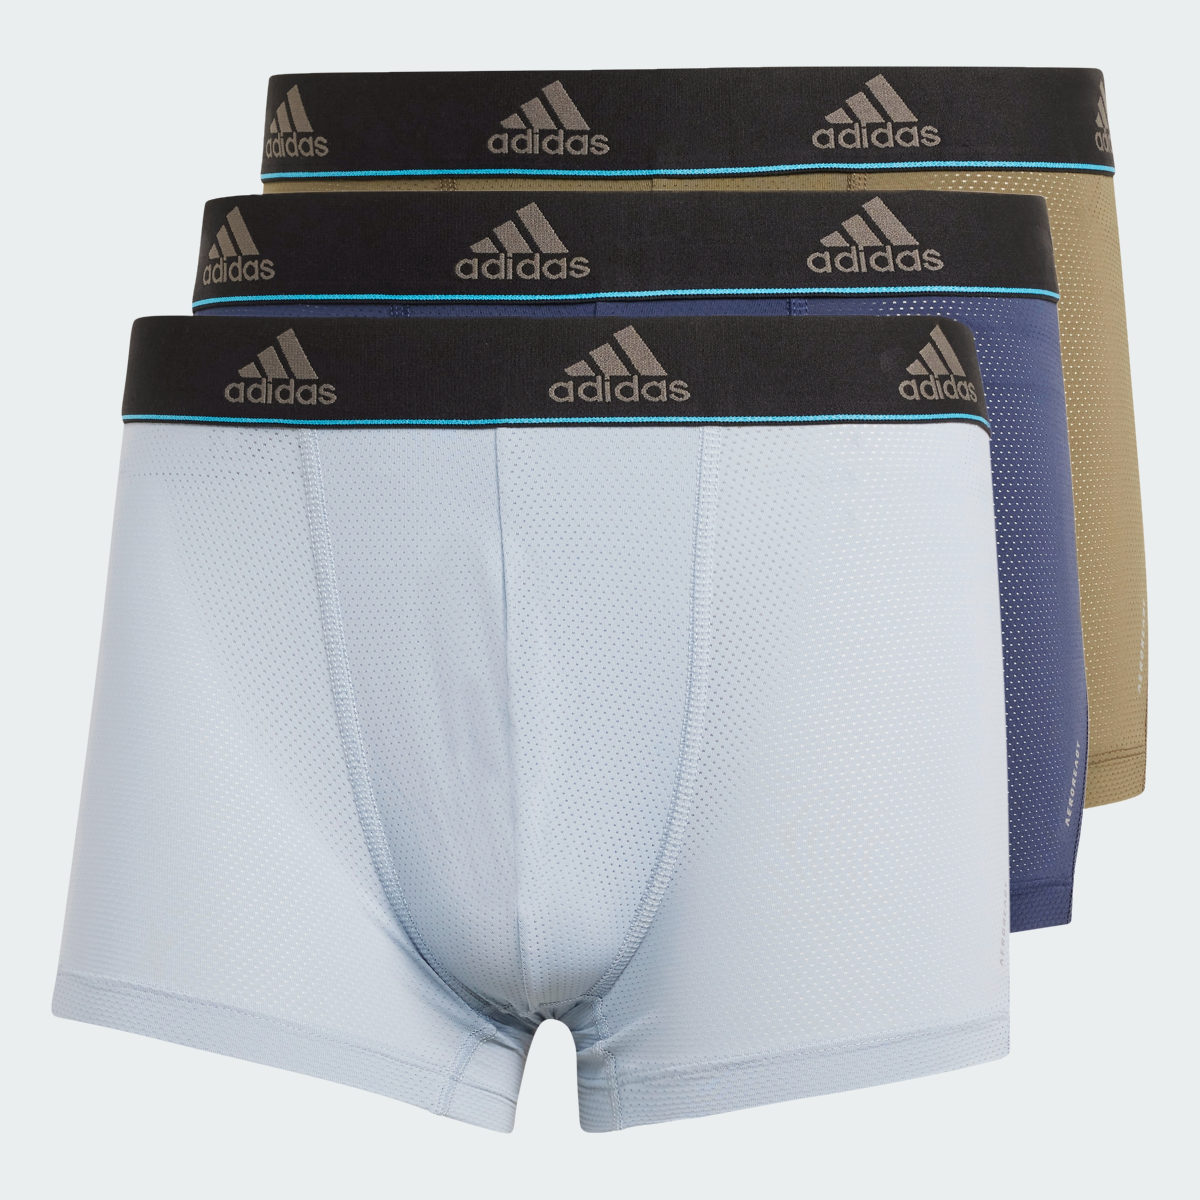 Adidas Active Micro Flex Mesh Trunk Underwear. 7